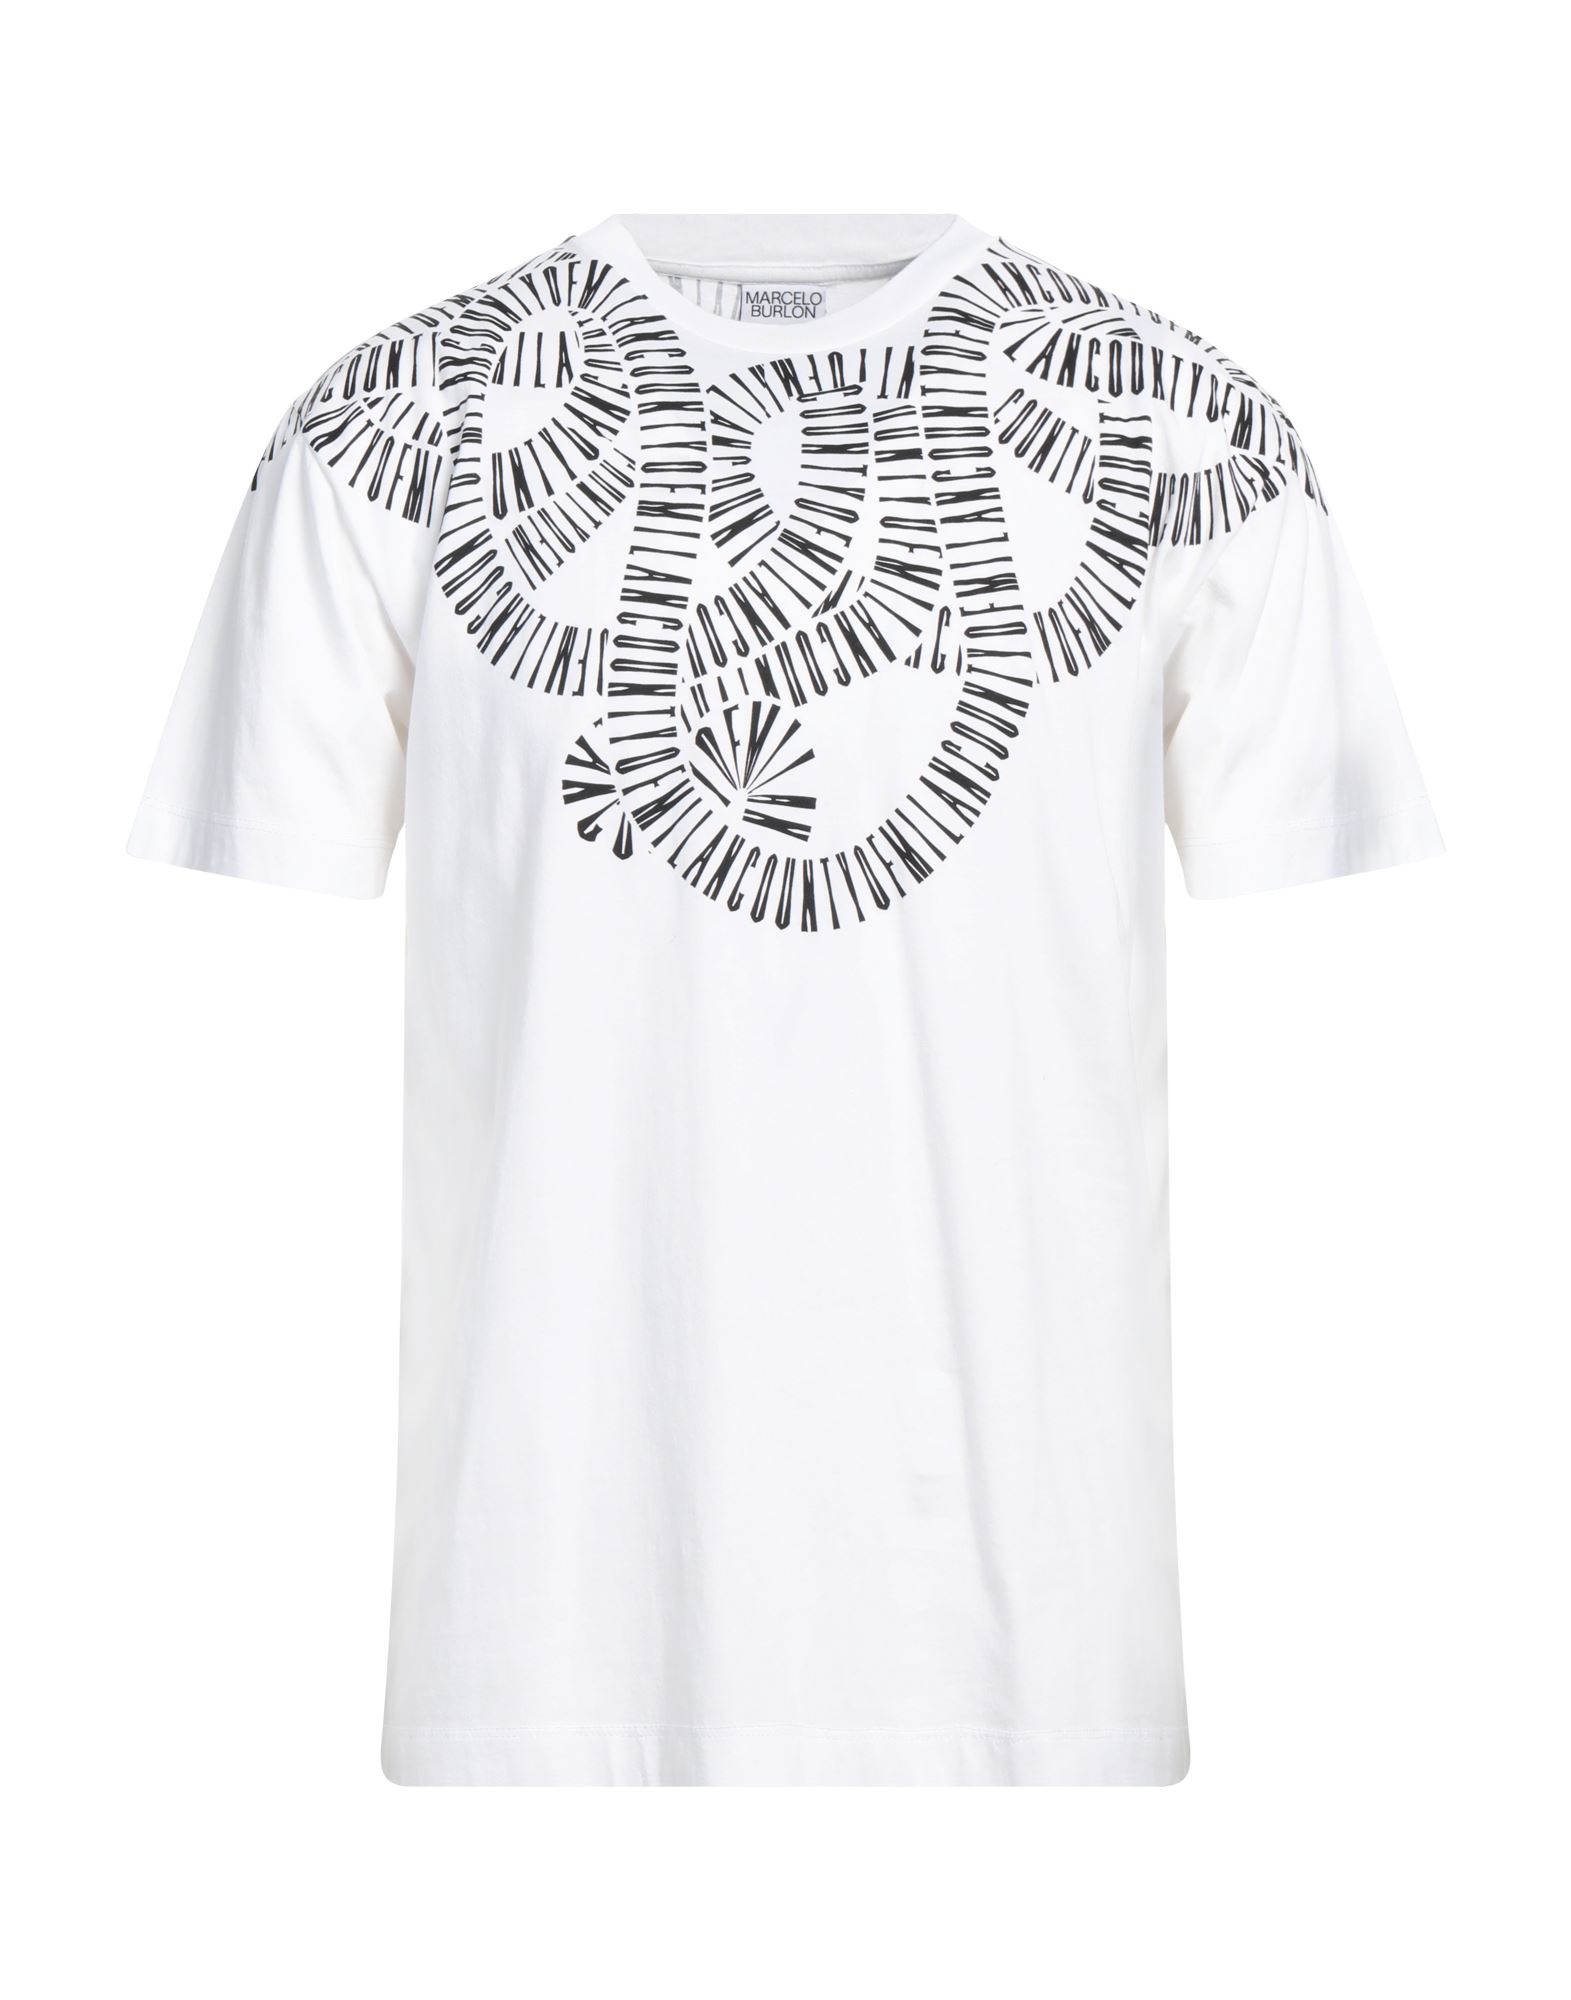 MARCELO BURLON T-shirts Herren Weiß von MARCELO BURLON